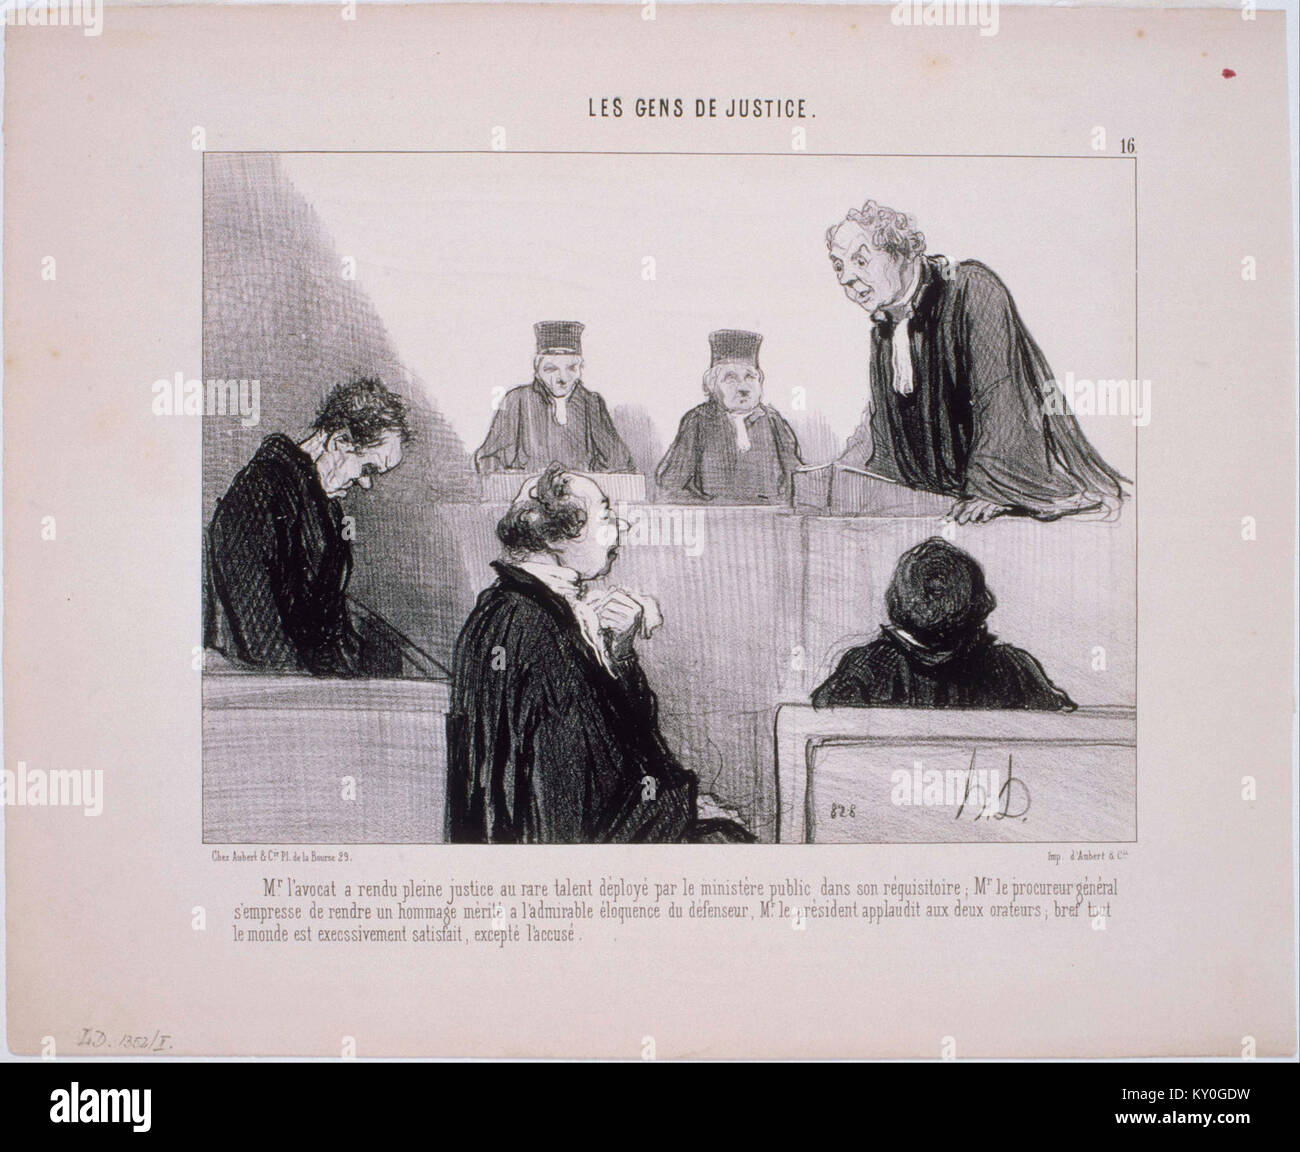 Honoré Daumier - Les Gens de Giustizia- M. L'Avocat un rendu pleine giustizia... - Google Art Project Foto Stock